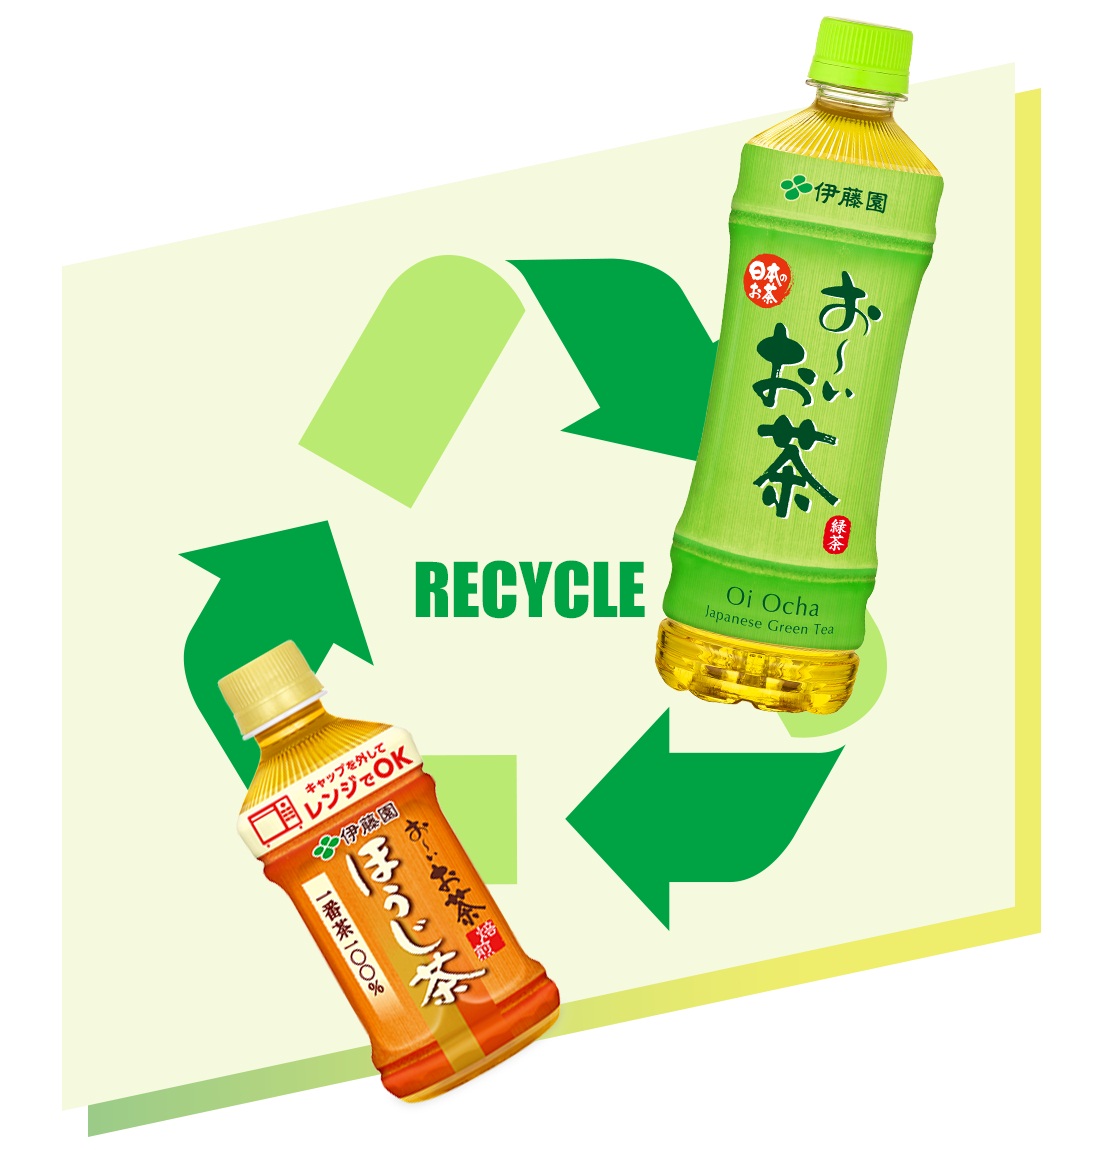 適切な分別 の認知度向上を目指す ペットボトルつぶせるリサイクルbox 12月7日 月 からshibuya Cast で期間限定設置 株式会社伊藤園のプレスリリース